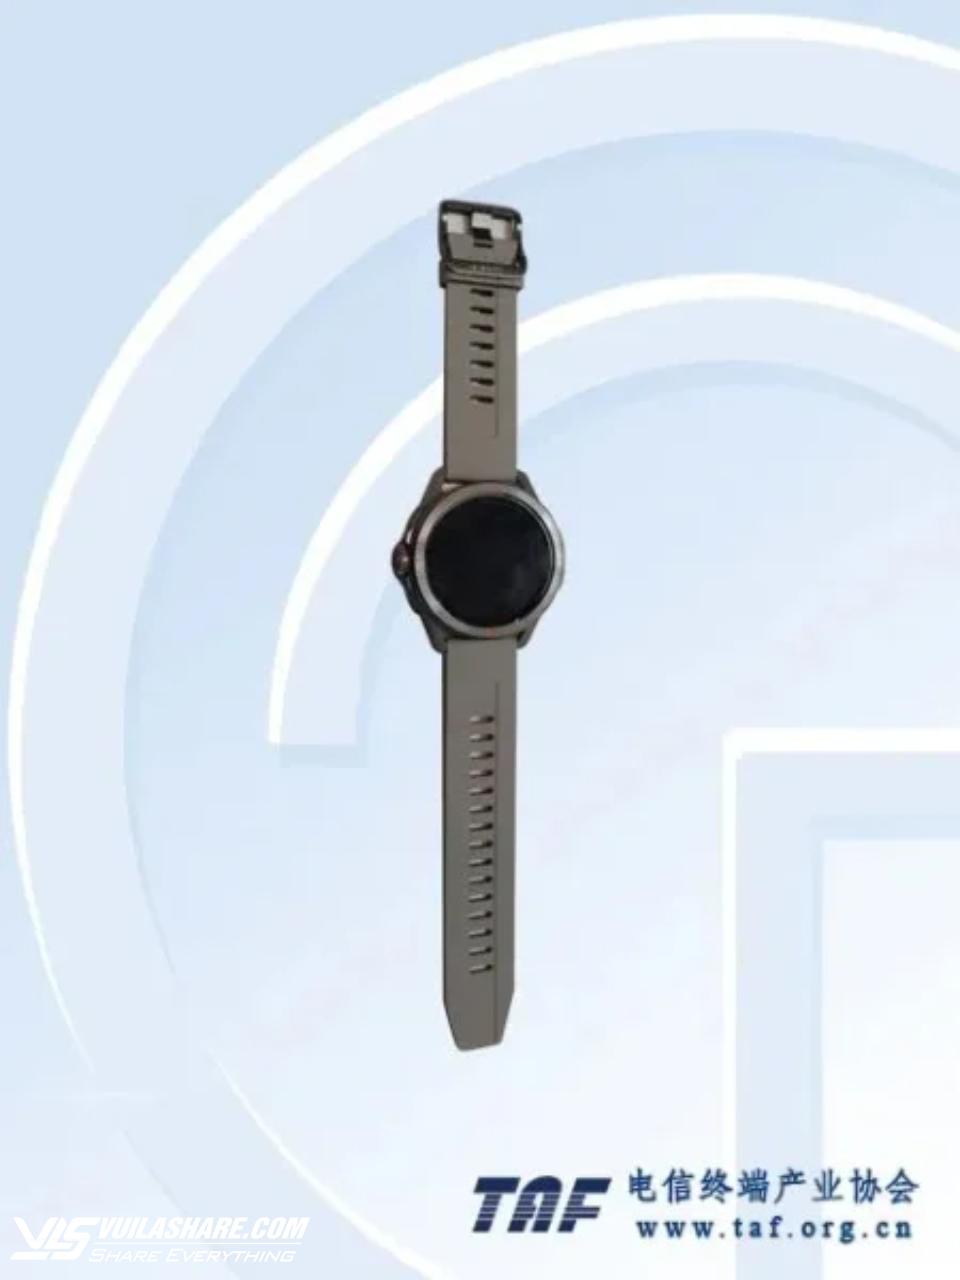 Smartwatch bí ẩn của Xiaomi xuất hiện với thiết kế ấn tượng- Ảnh 1.